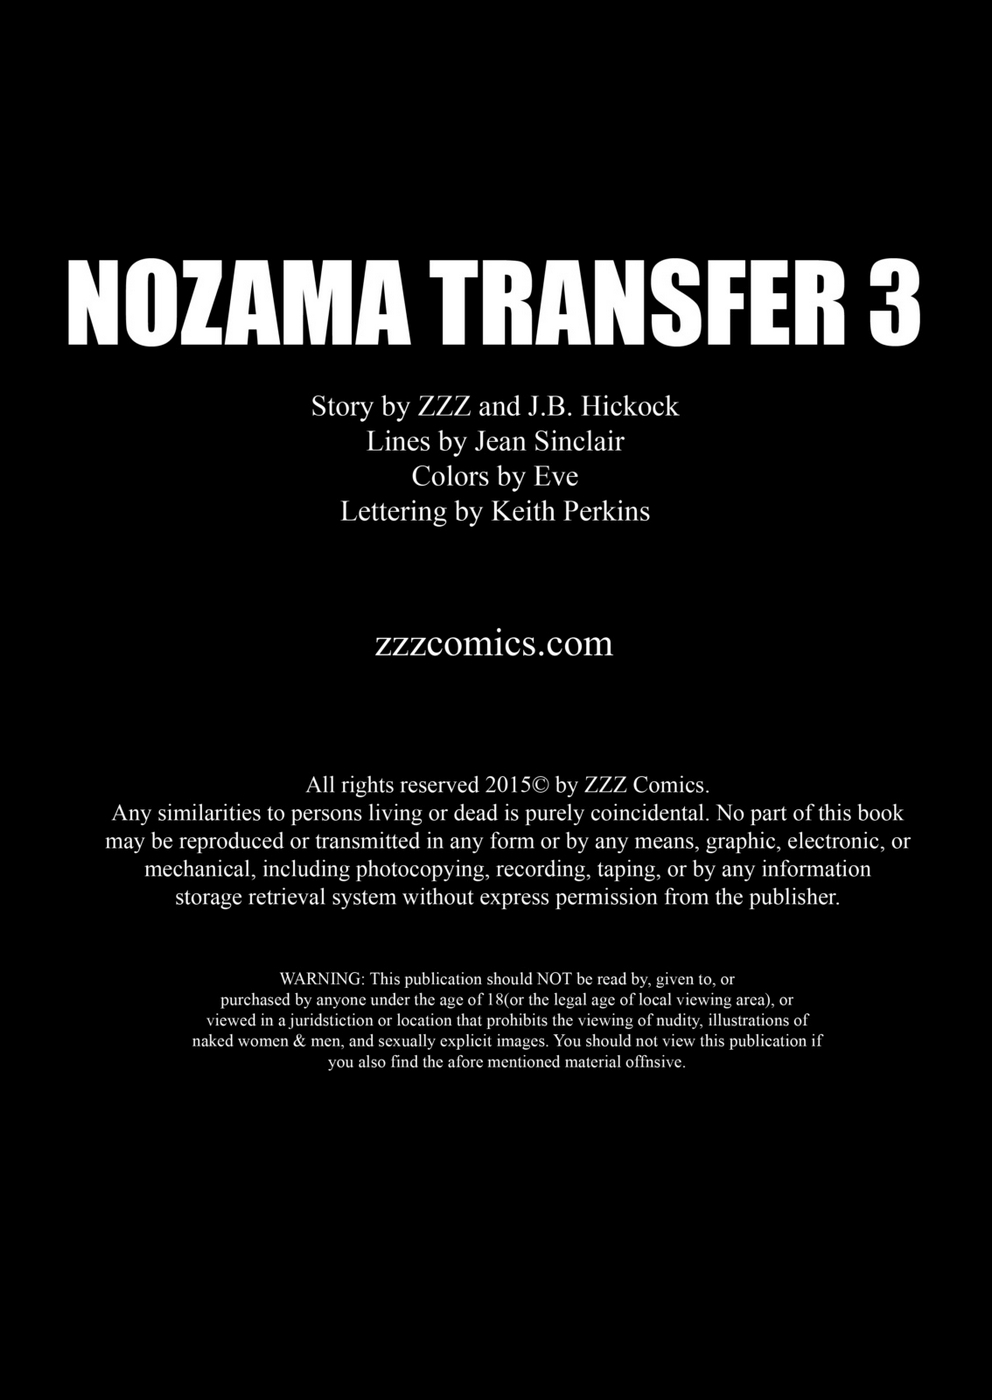 zzz nozama transfer 3